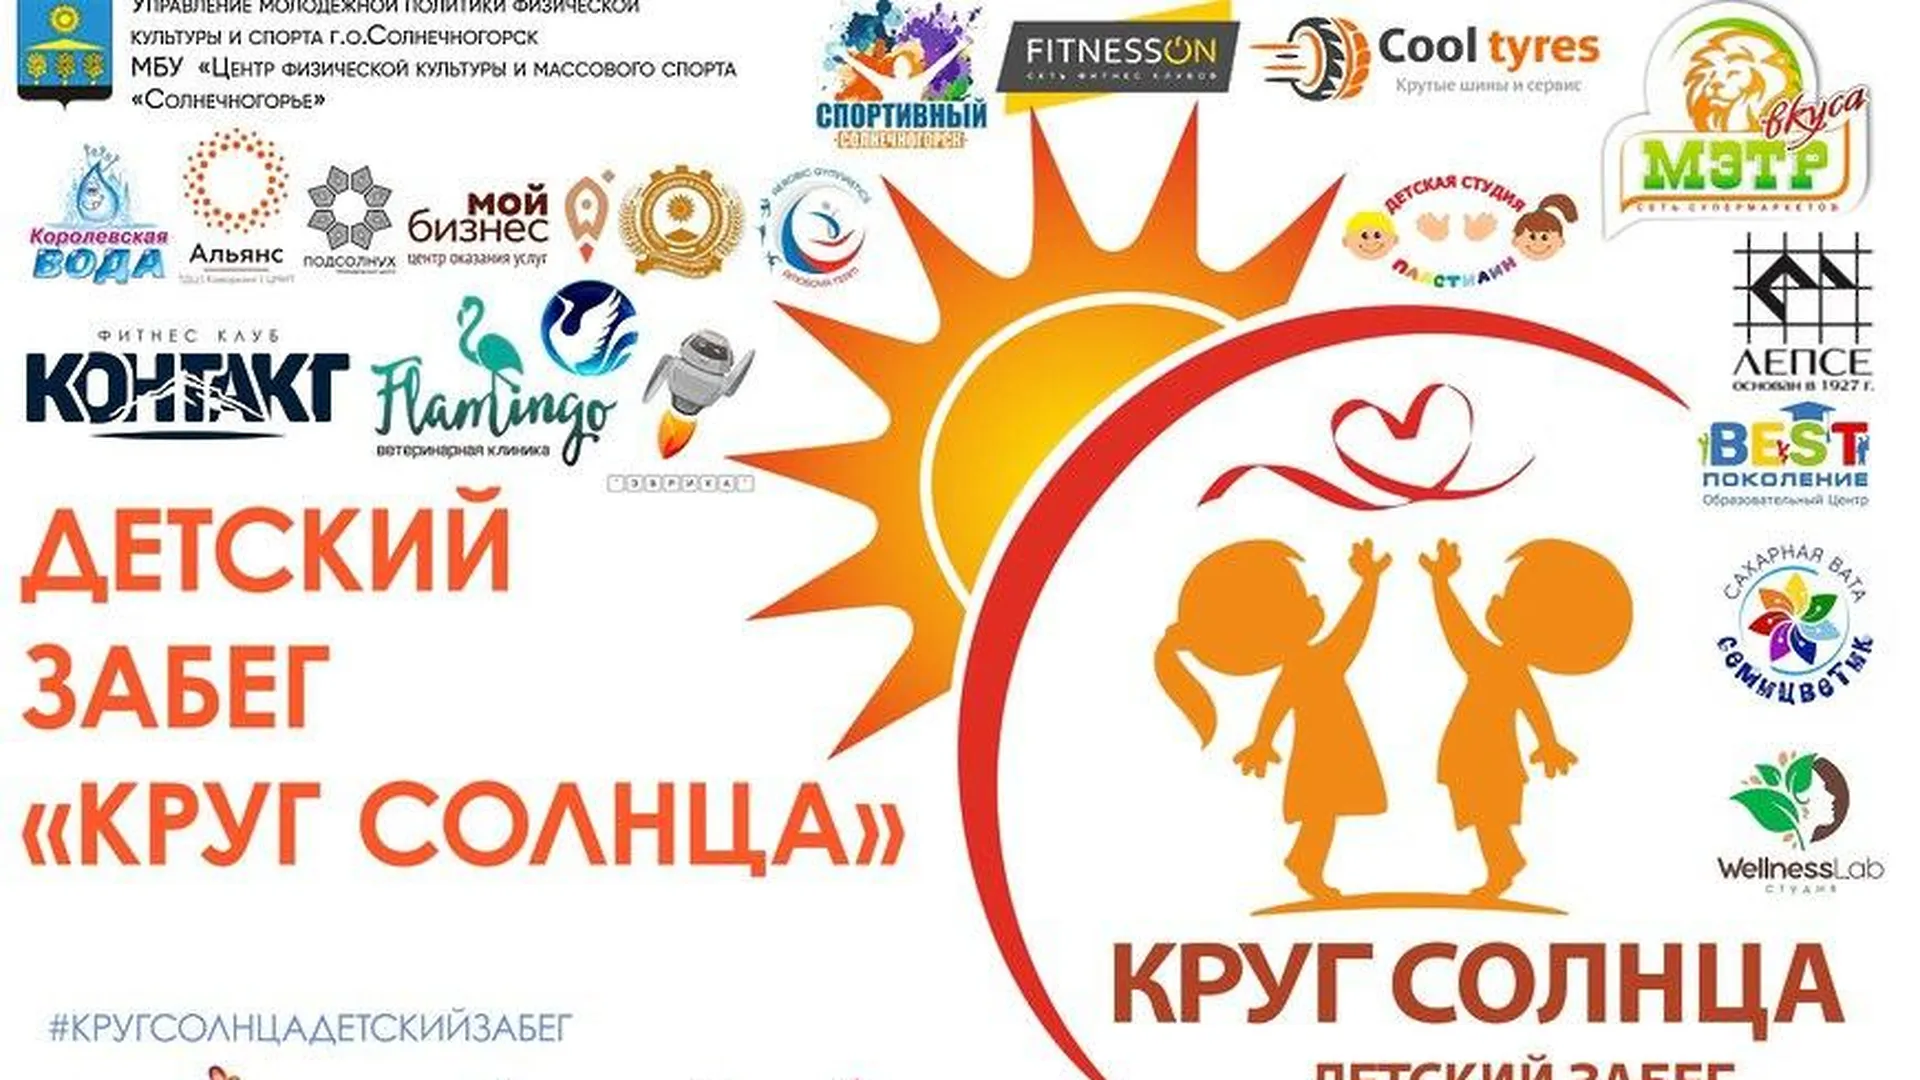 Благотворительный забег «Круг Солнца» состоится в Солнечногорске 25 мая